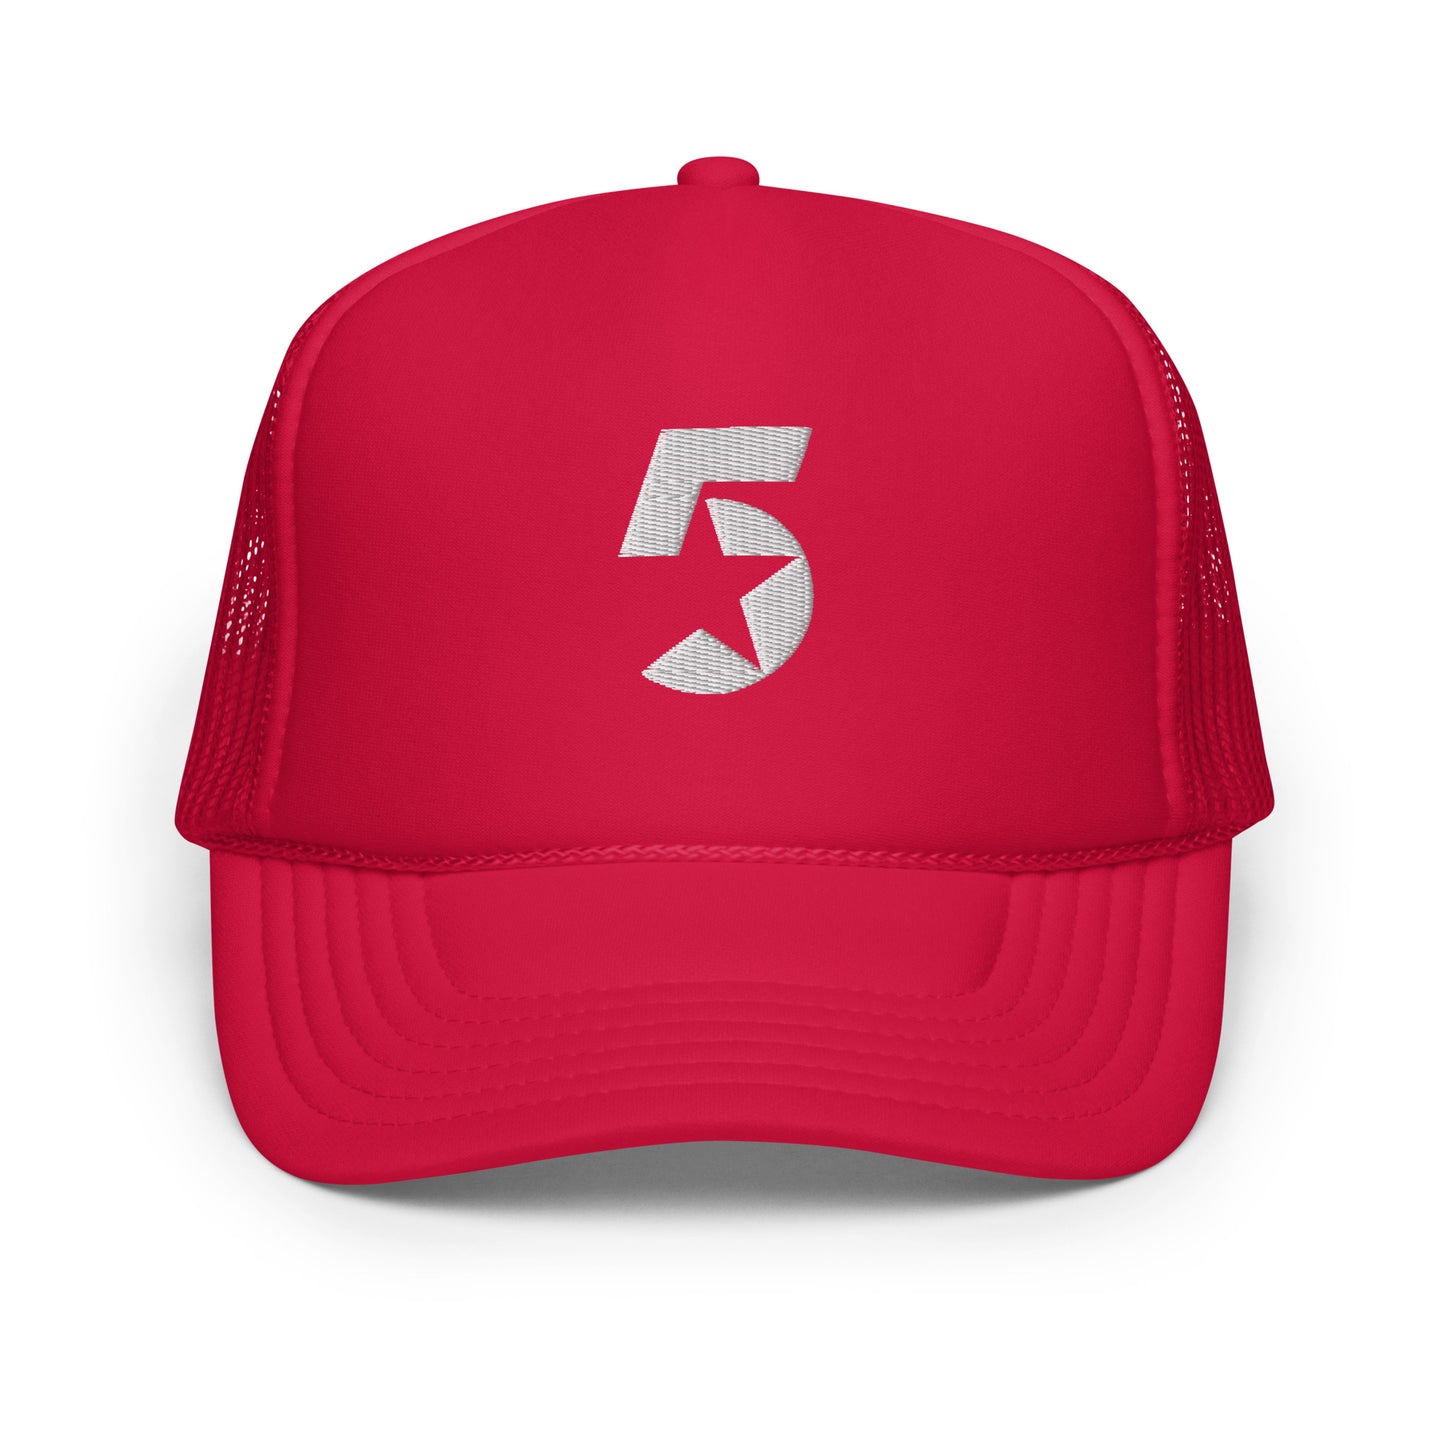 5ive Foam trucker hat